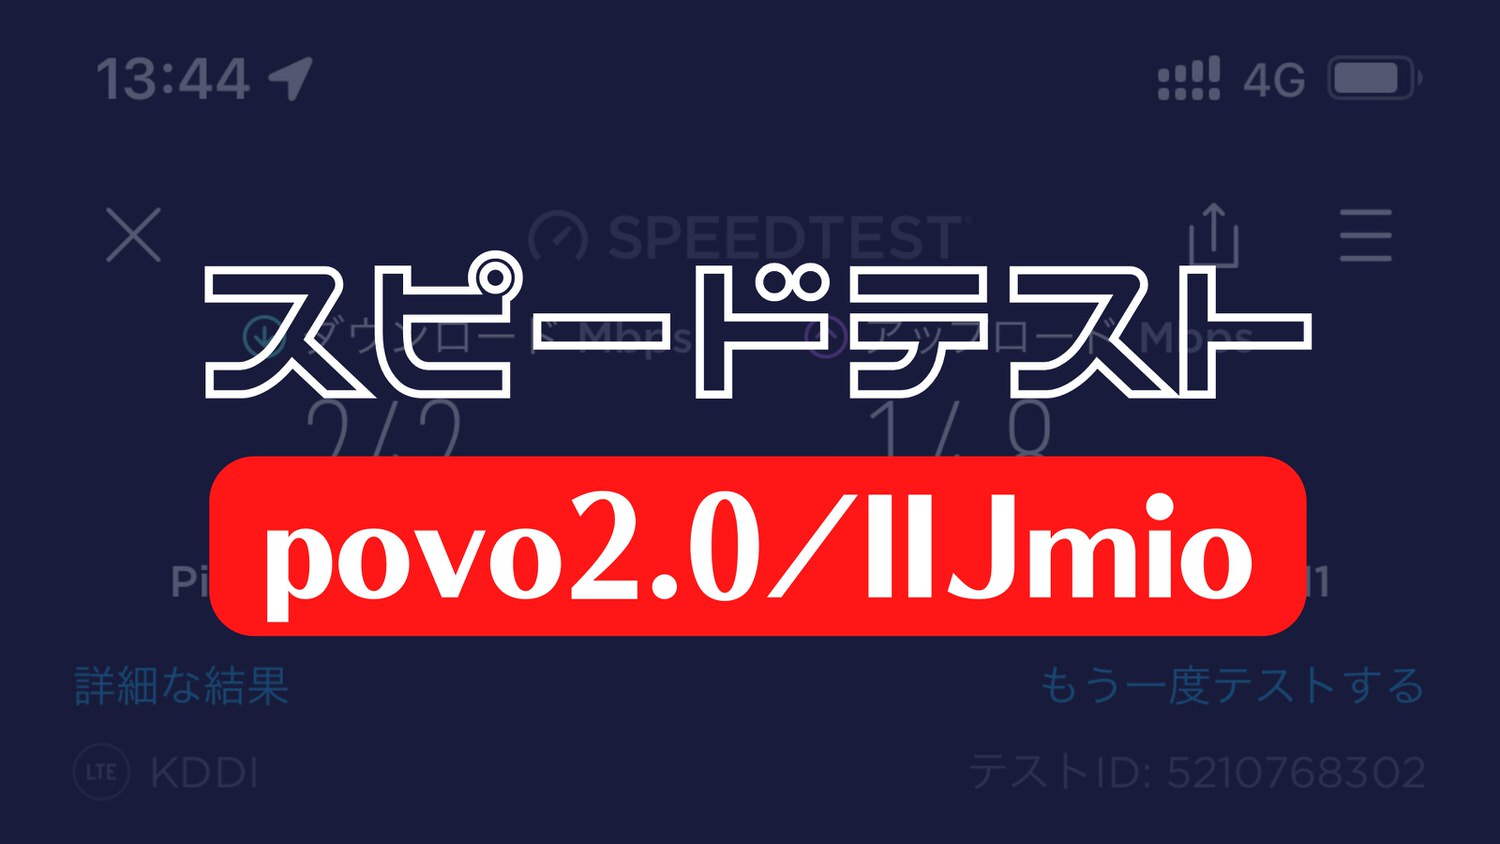 スピードテスト IIJmio povo2.0 27000